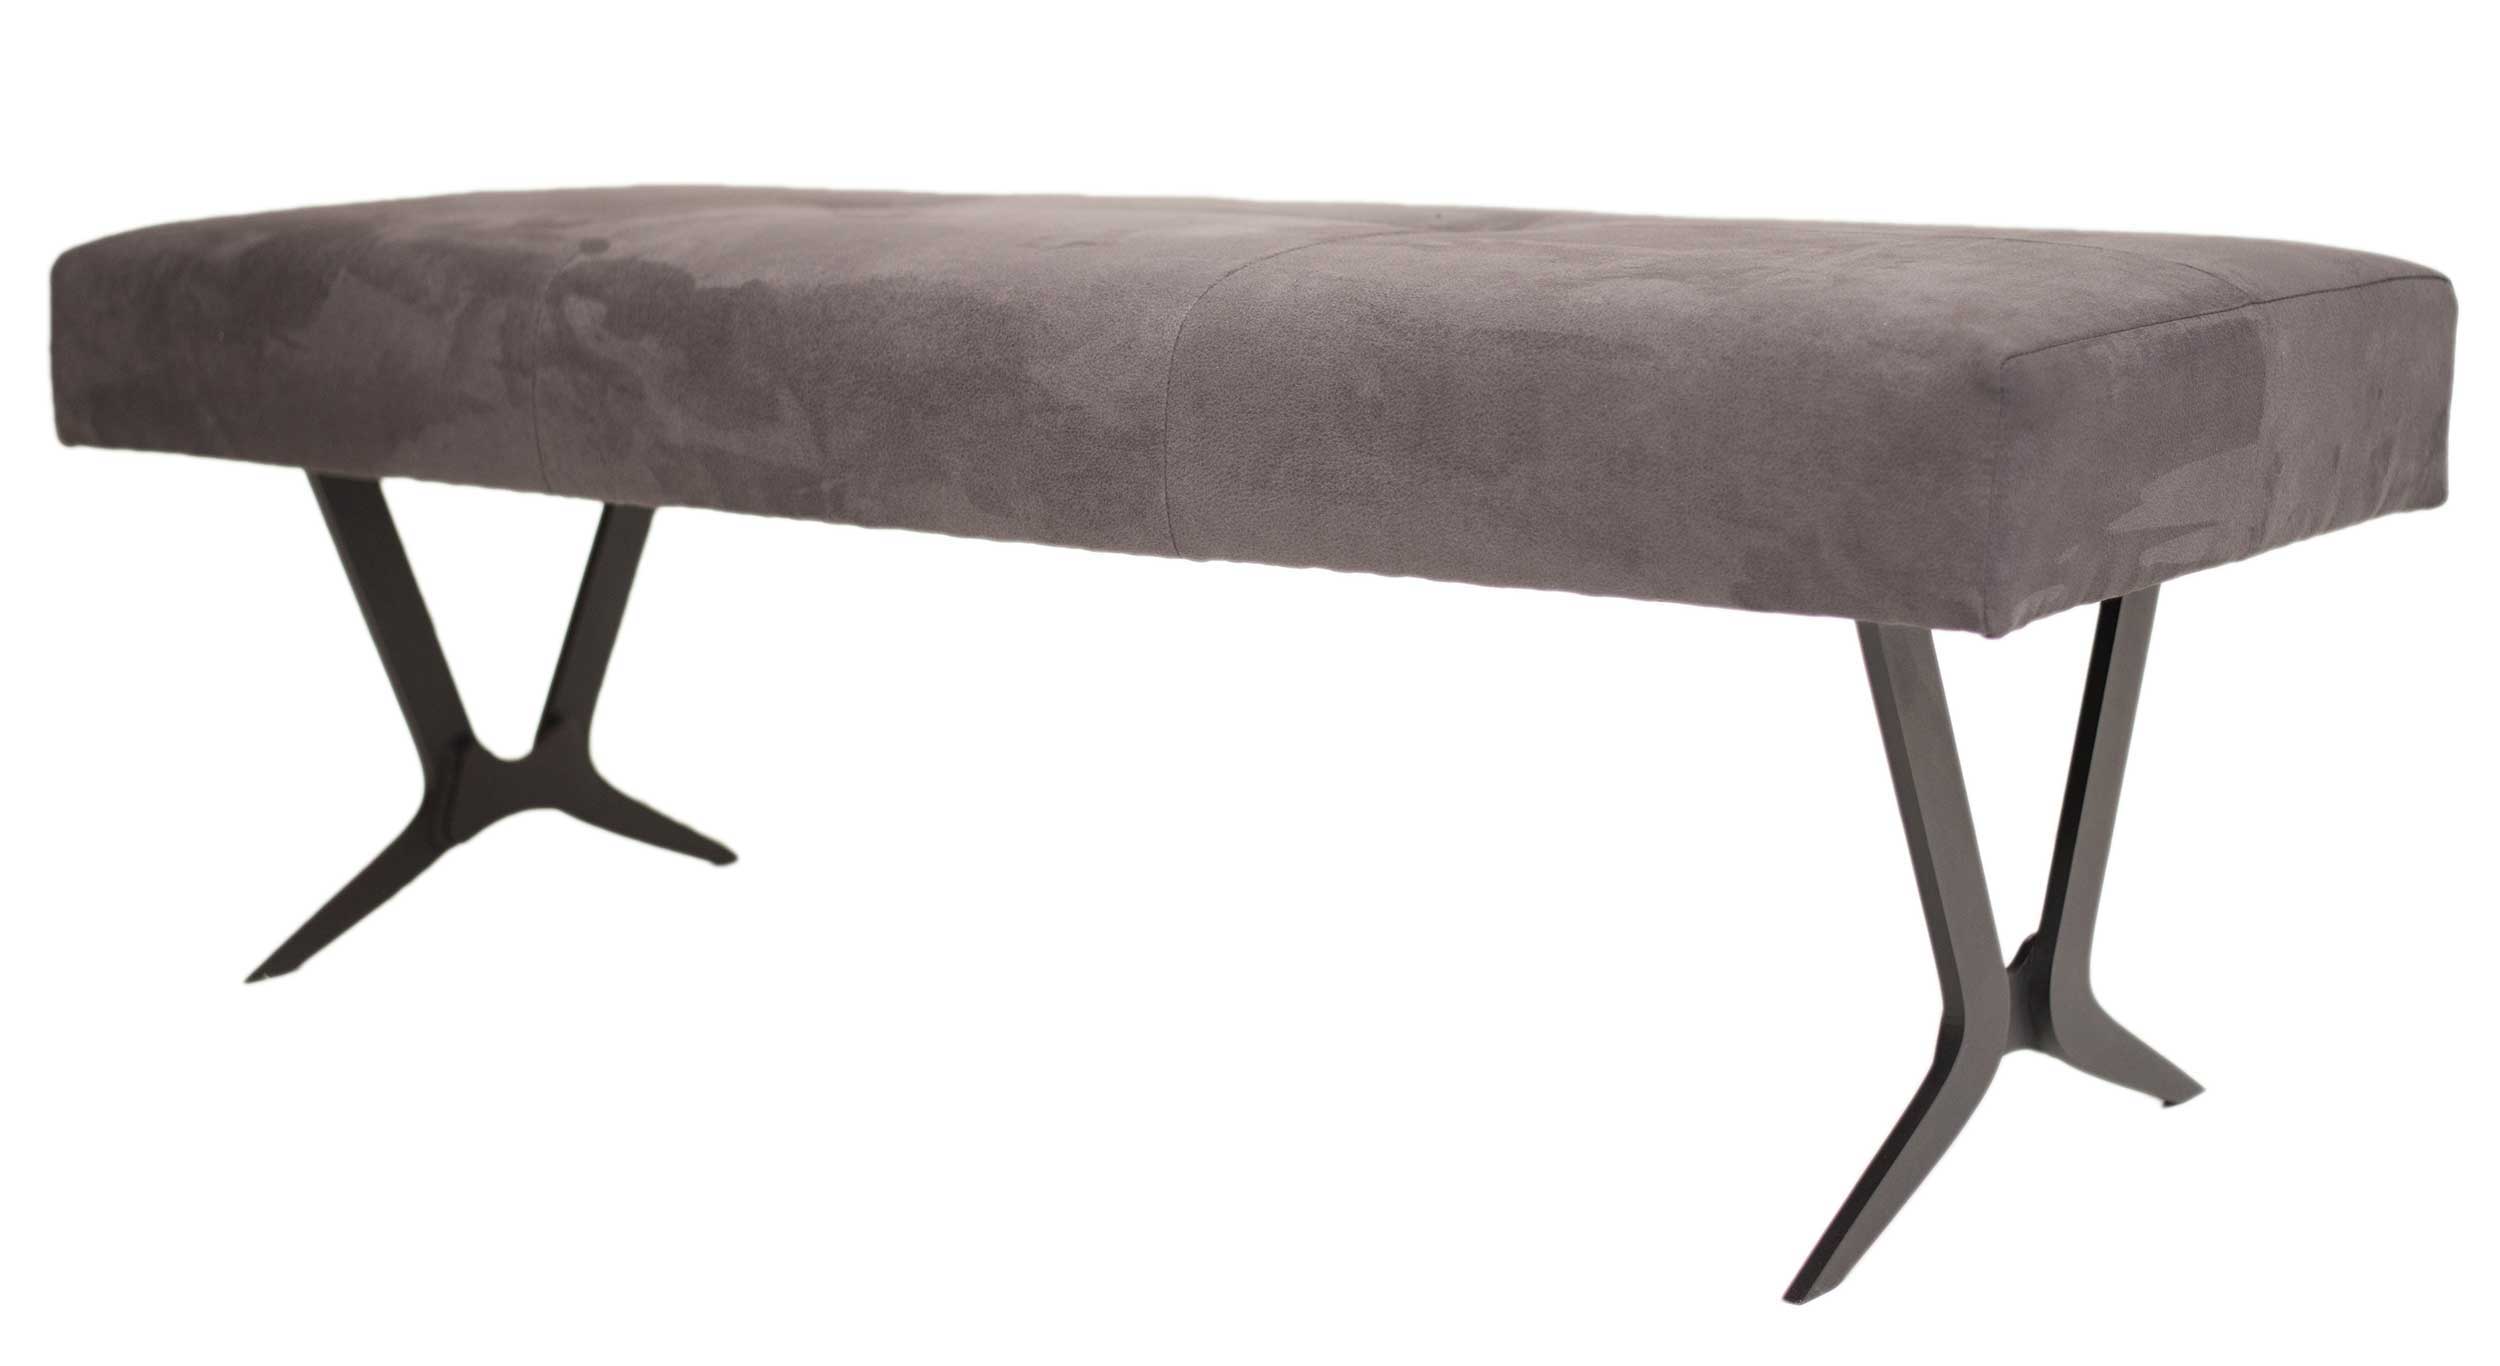 Standard Furniture Sant Etienne moderne Sofabank mit Metallgestell schwarz